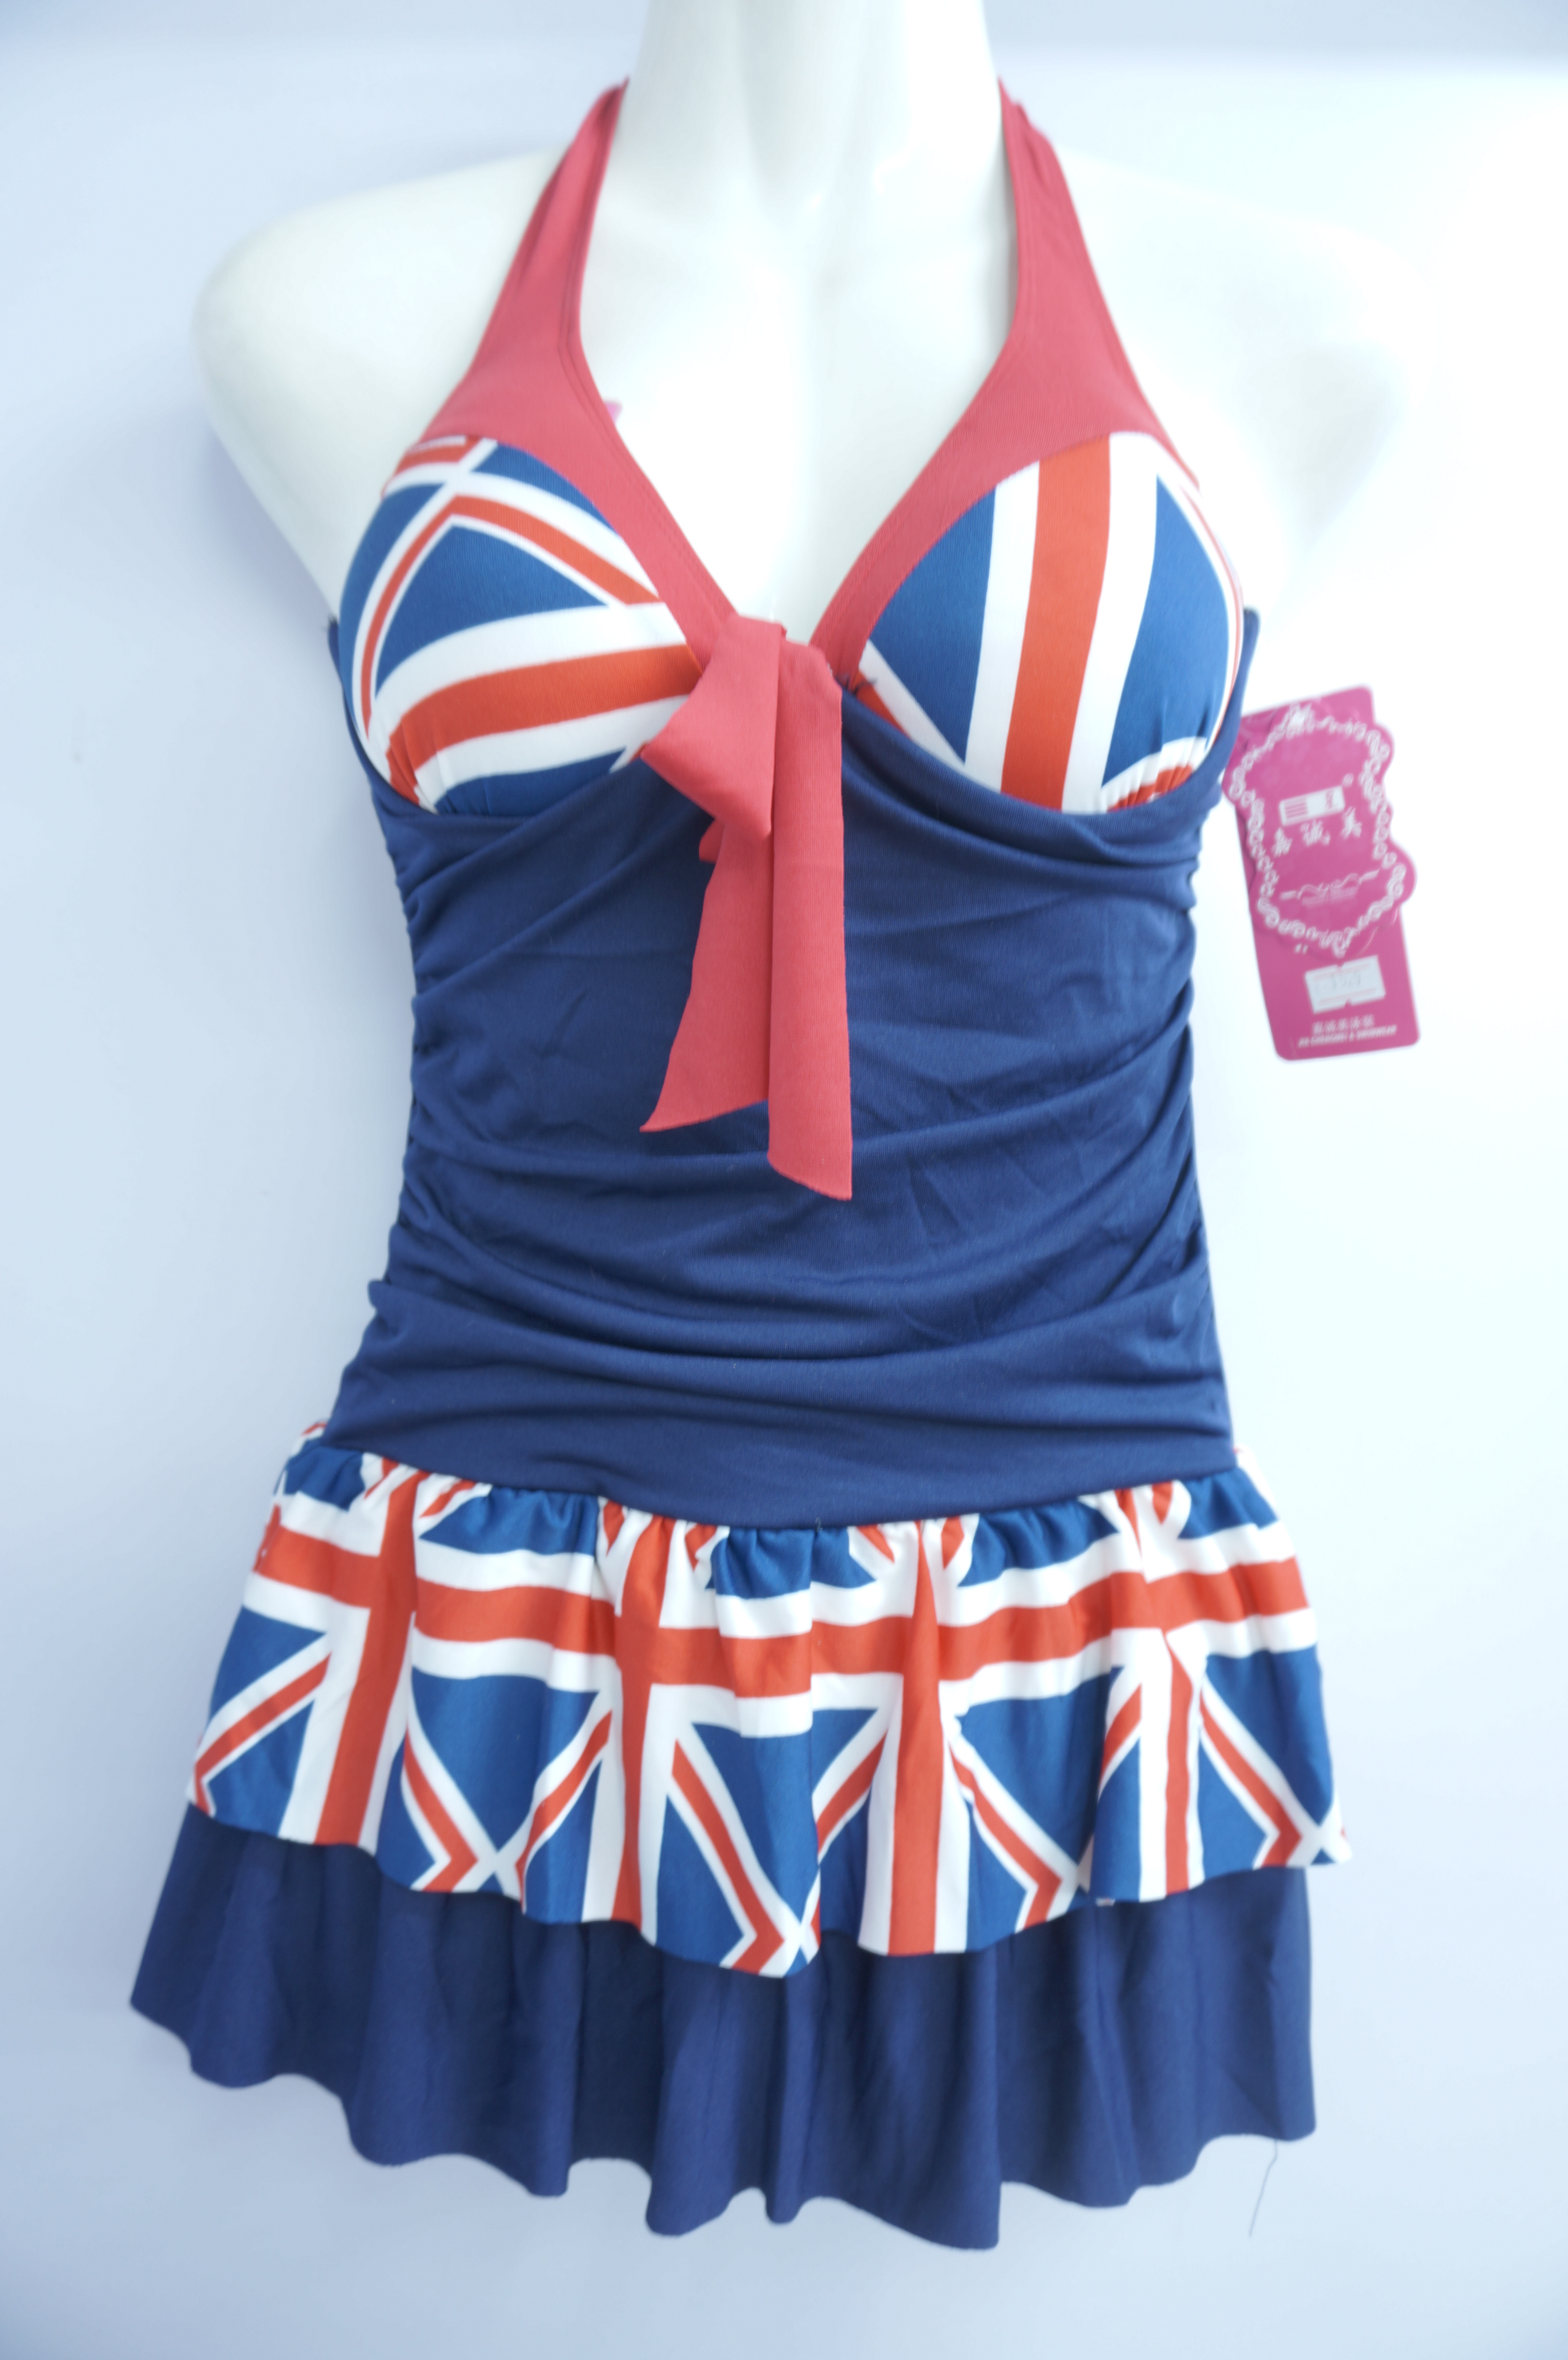 2015新款 靓妹英国米字旗 连体钢托聚拢性感泳衣 女式温泉泳衣